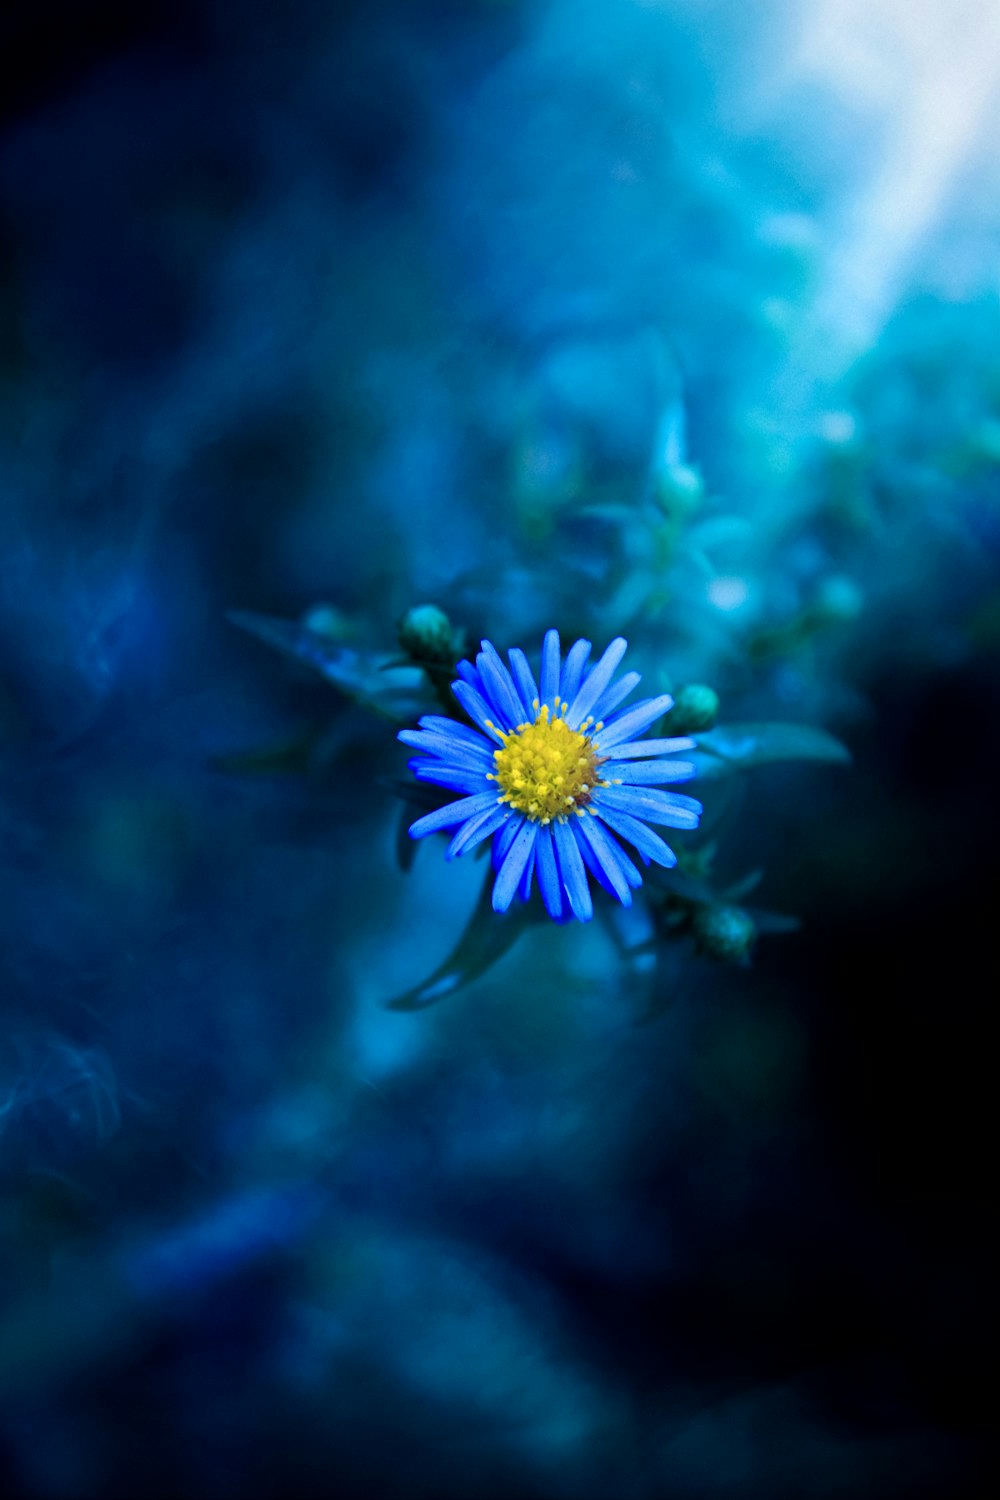 黄色い中心を持つ小さな青い花